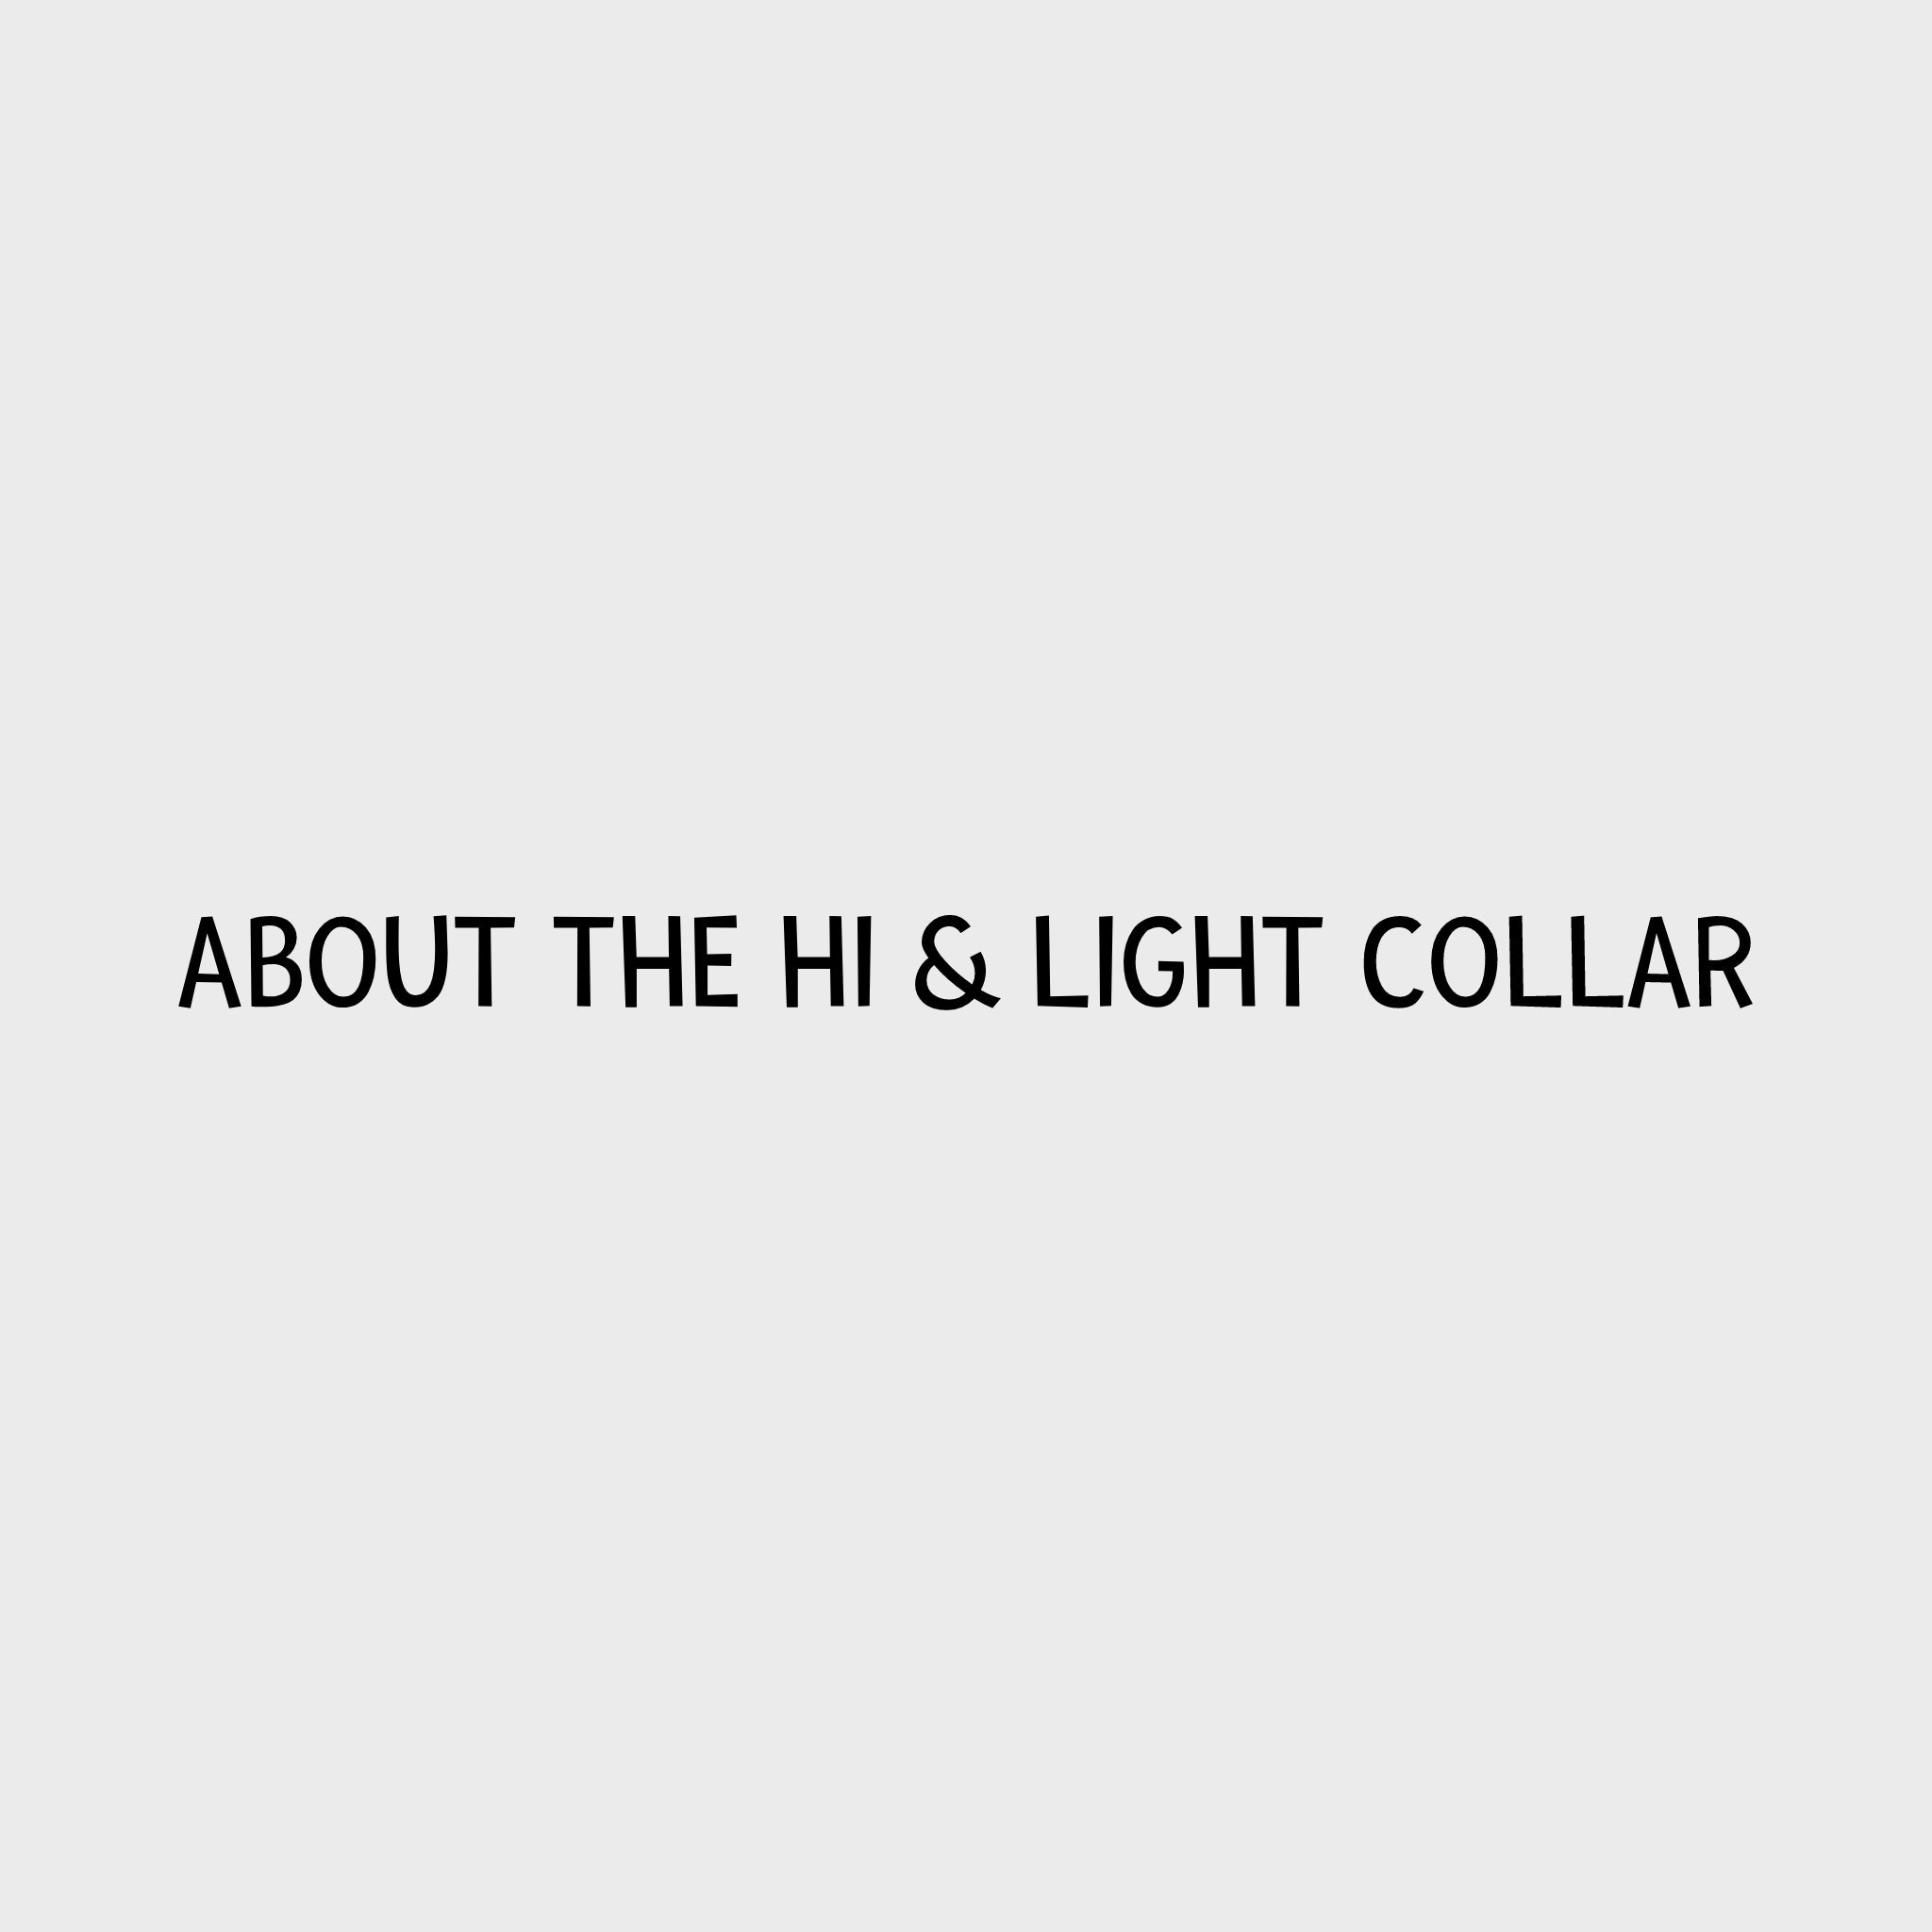 Video - Ruffwear Hi & Light Collar